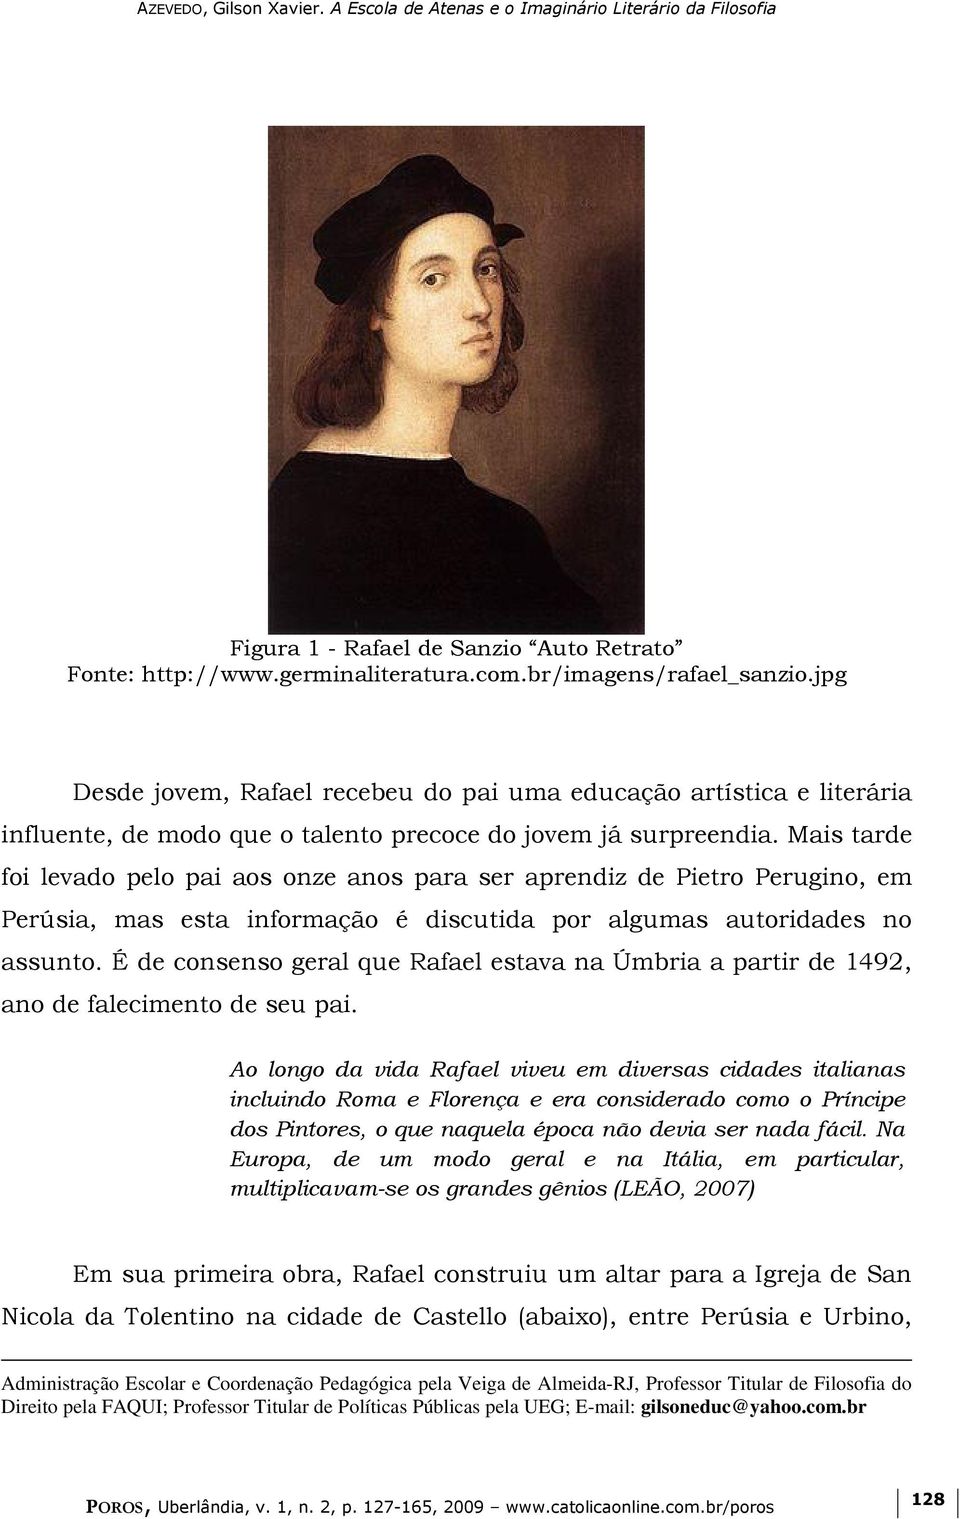 Mais tarde foi levado pelo pai aos onze anos para ser aprendiz de Pietro Perugino, em Perúsia, mas esta informação é discutida por algumas autoridades no assunto.